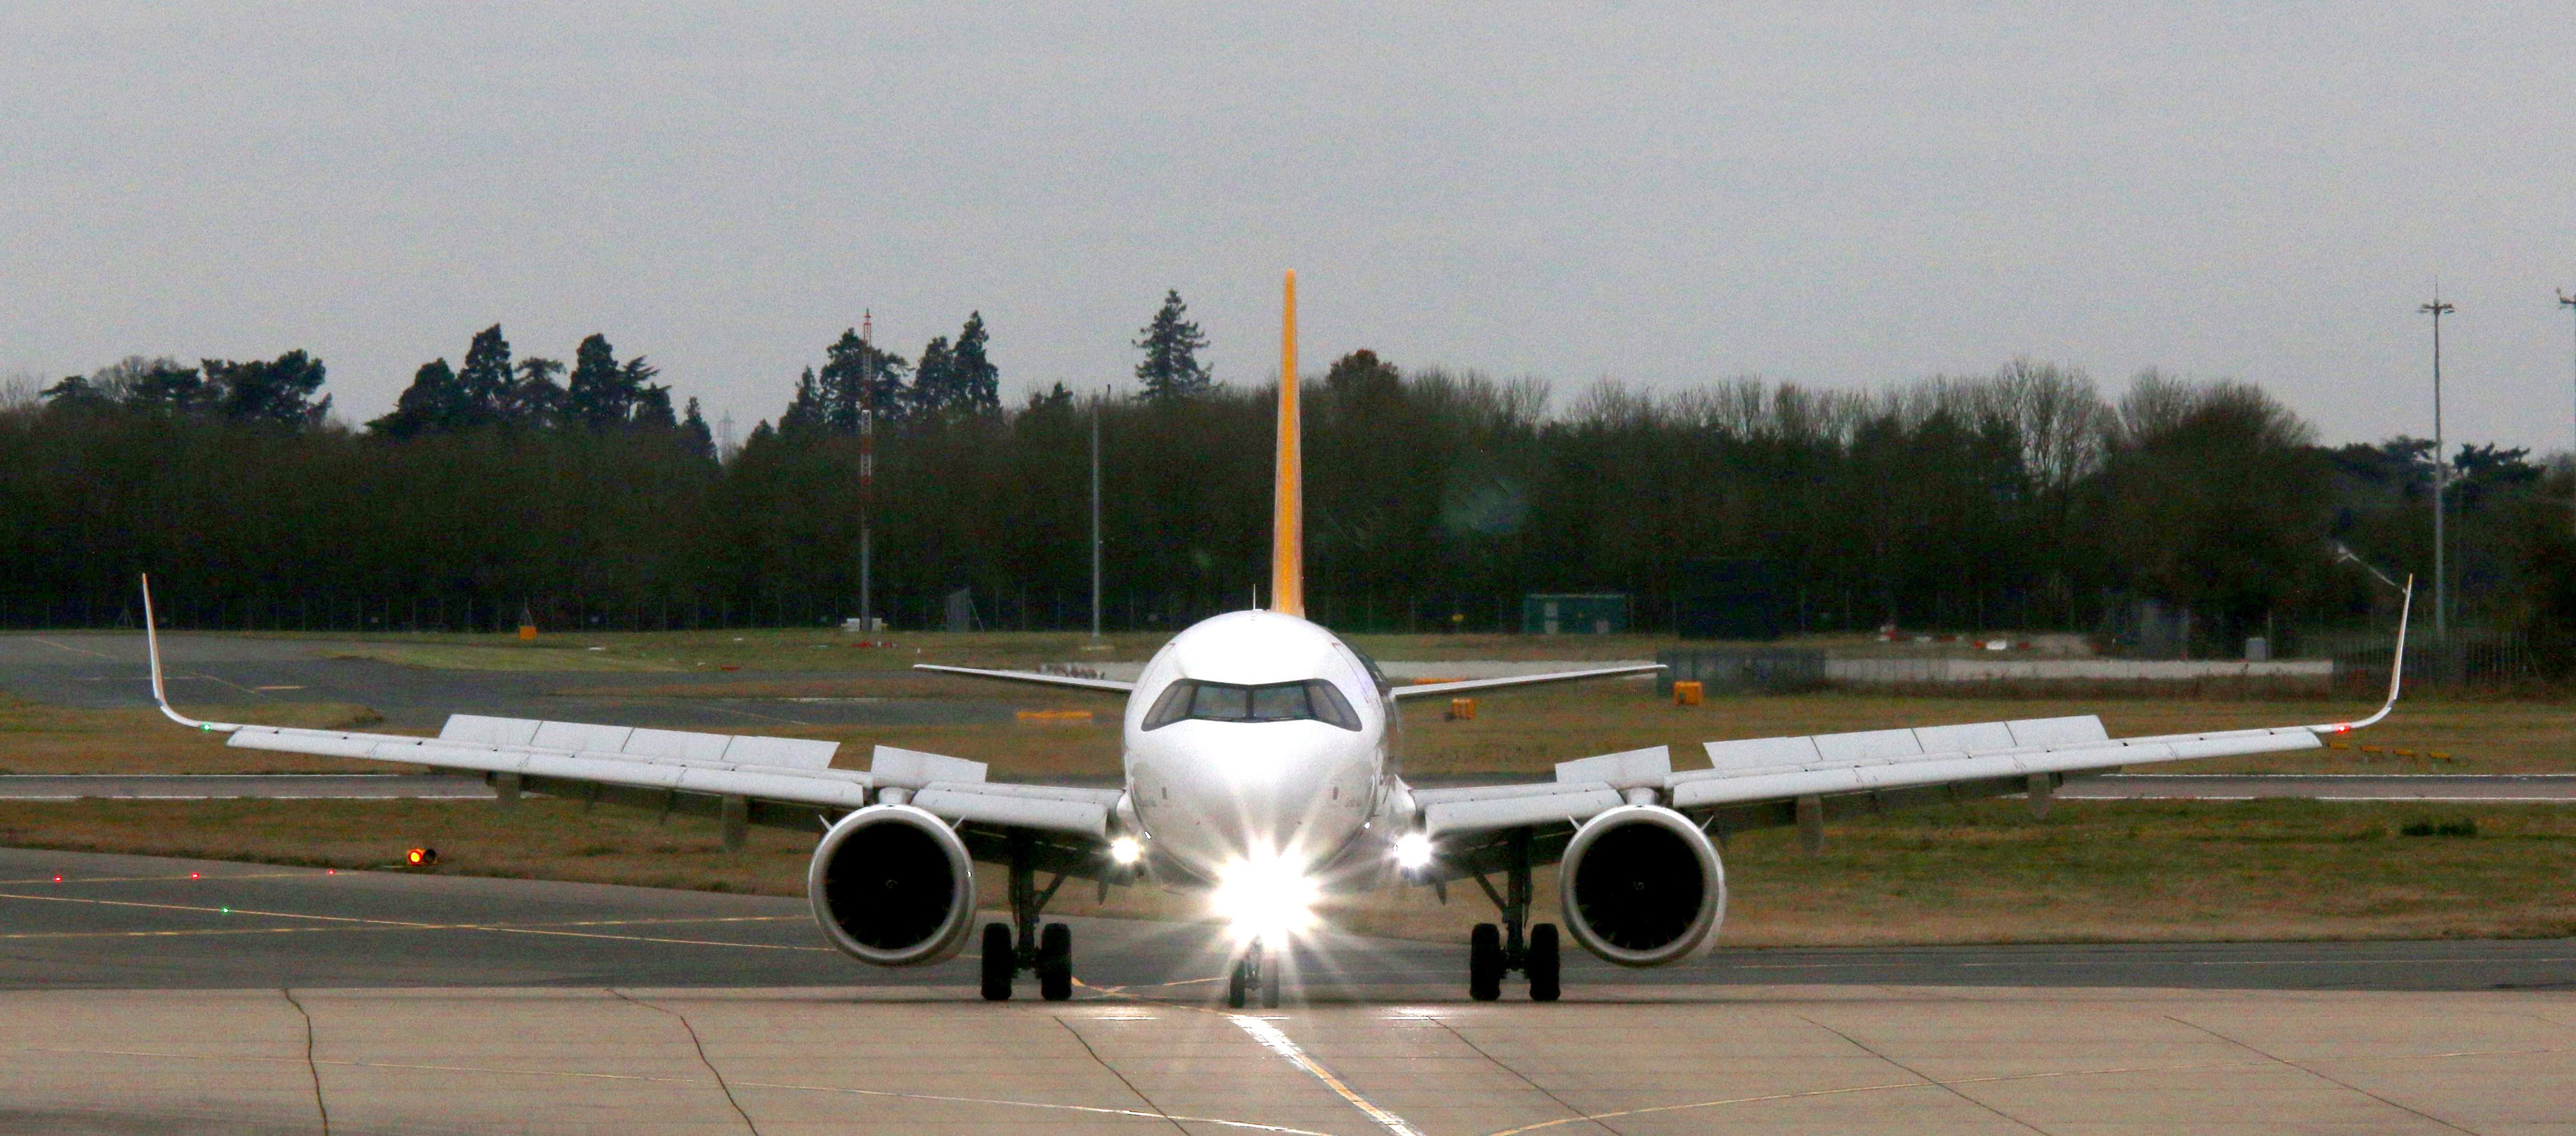 Pegasus A321neo exits runway